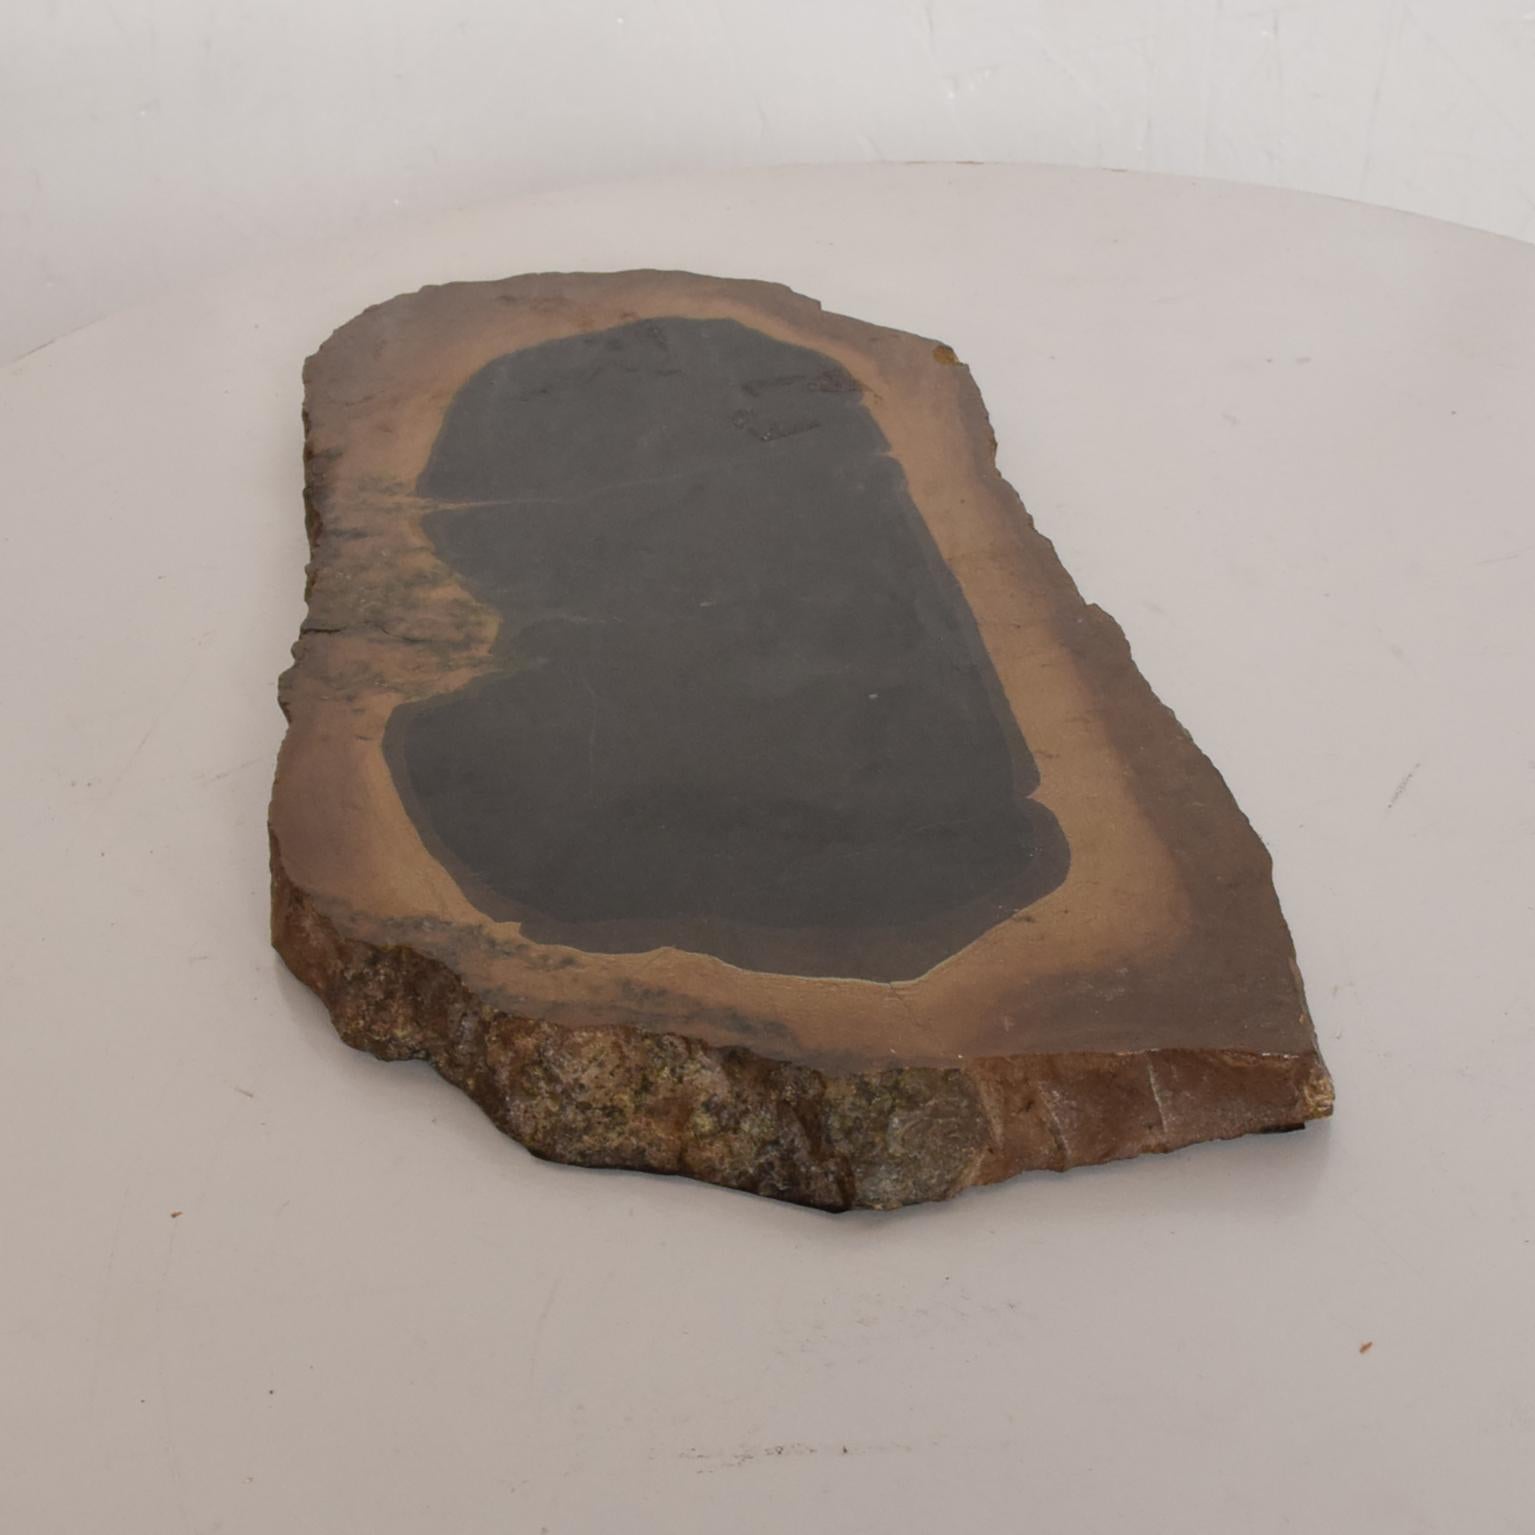 Pierre naturelle
Socle en pierre naturelle du Brésil
Dimensions : 12L x 6 D x 0,75 d'épaisseur.
Le fond est en feutre brun.
Condition vintage organique d'origine
Voir les images